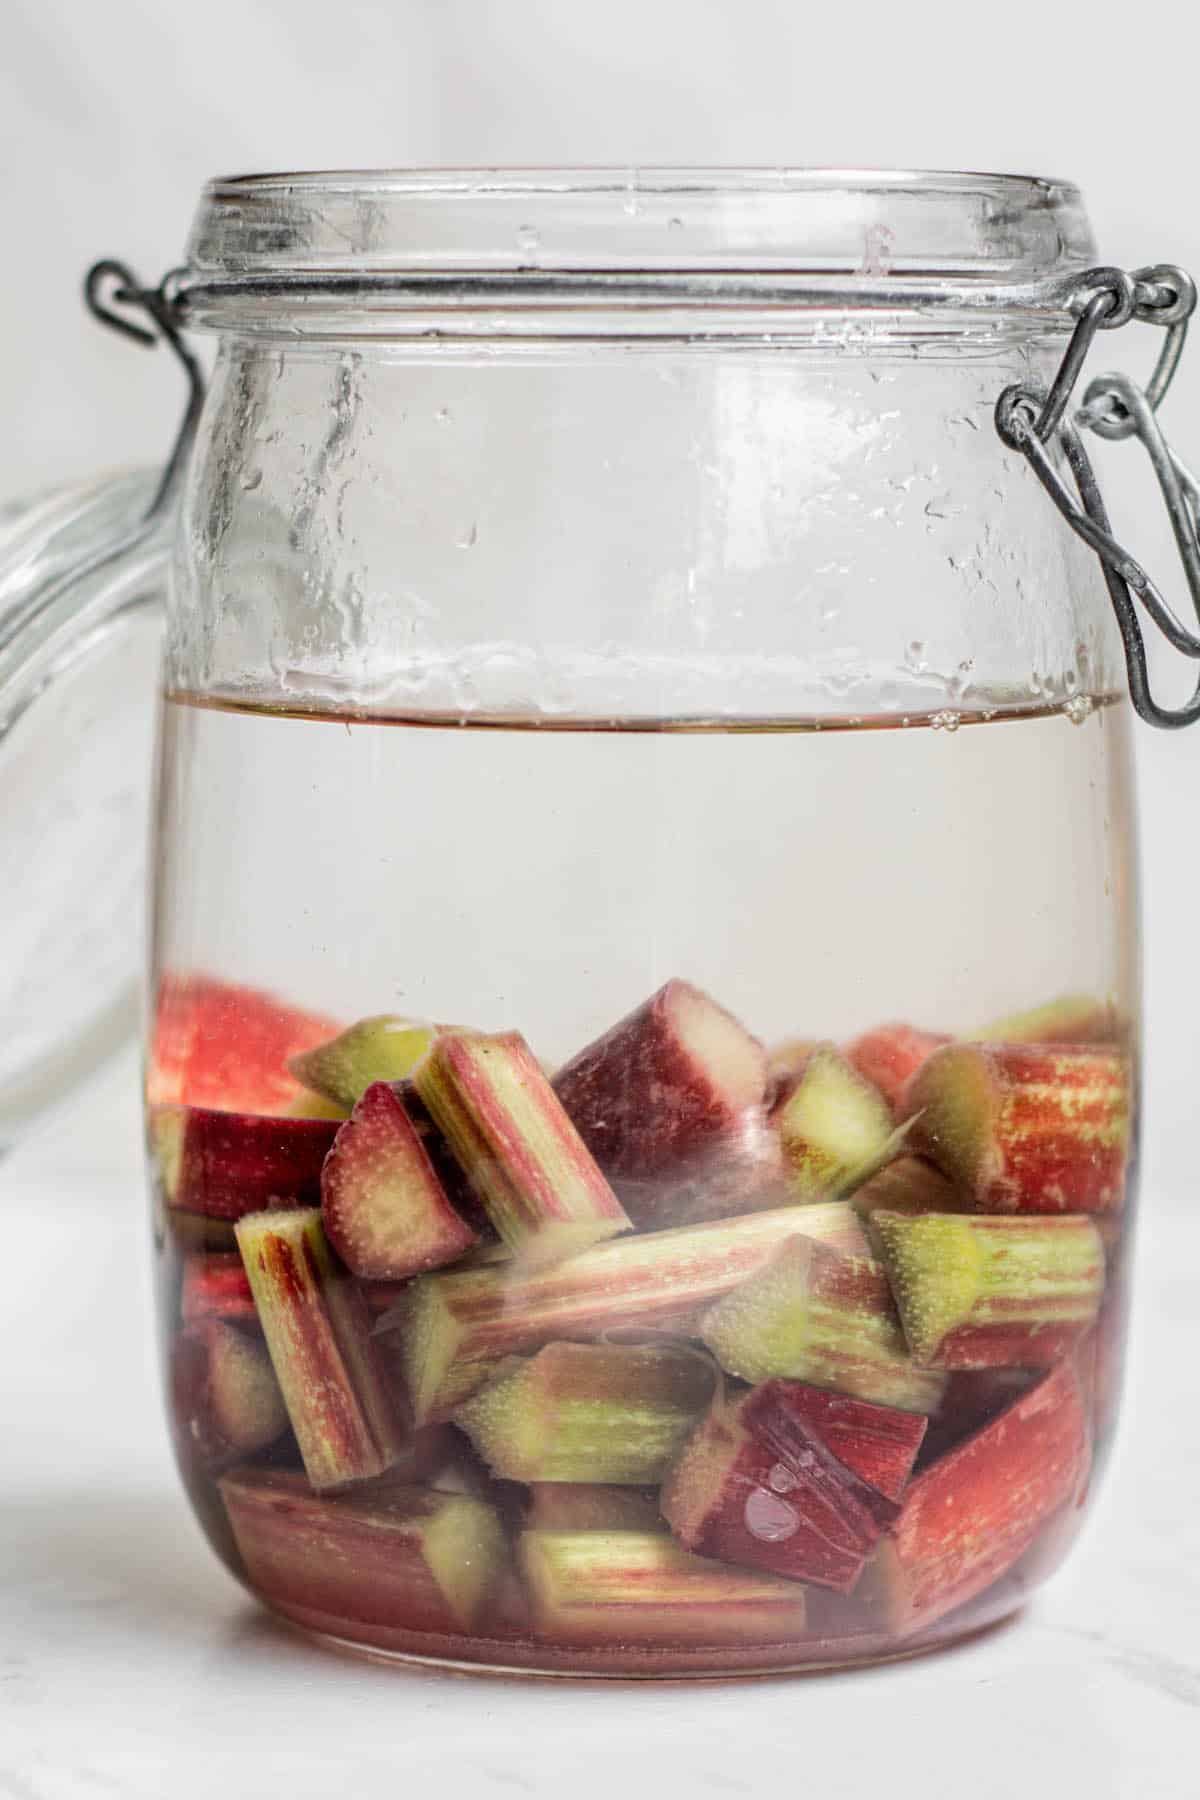 rhubarb infused vodka being made in a sealed jar.